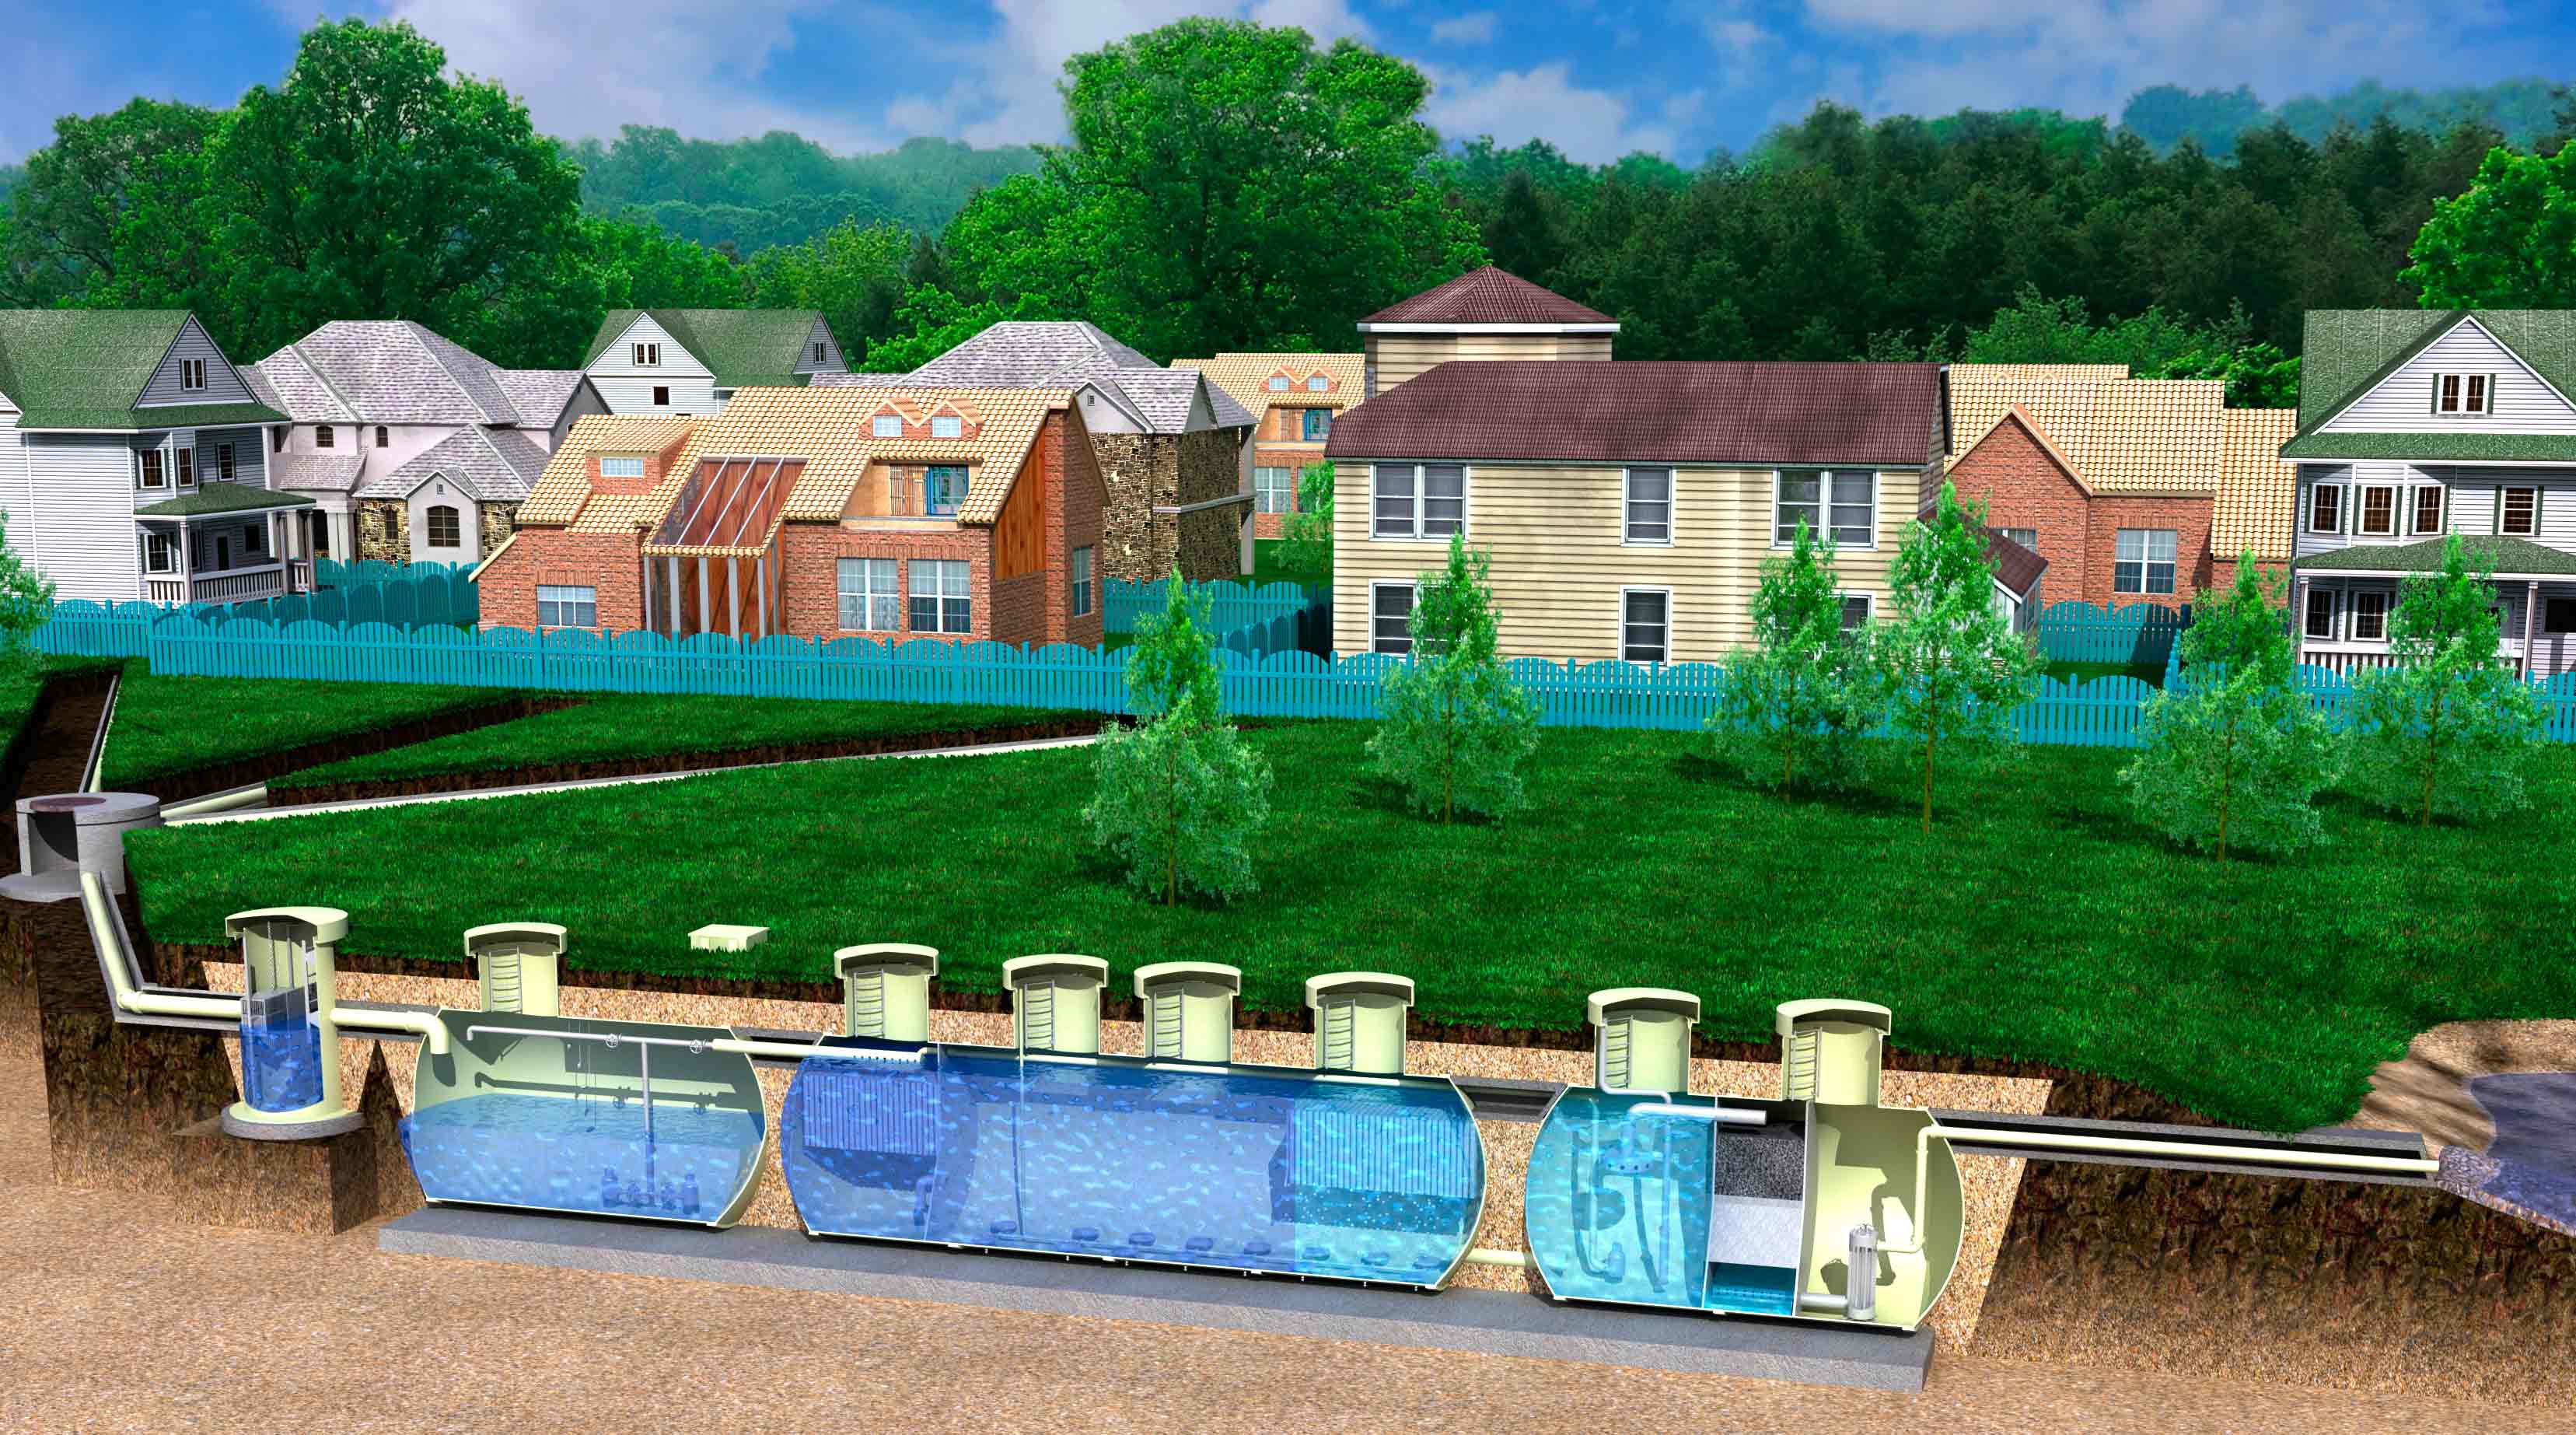 Очистка воды в загородном доме (83 фото): выбираем фильтры для водоочистки в частный коттедж и на дачу